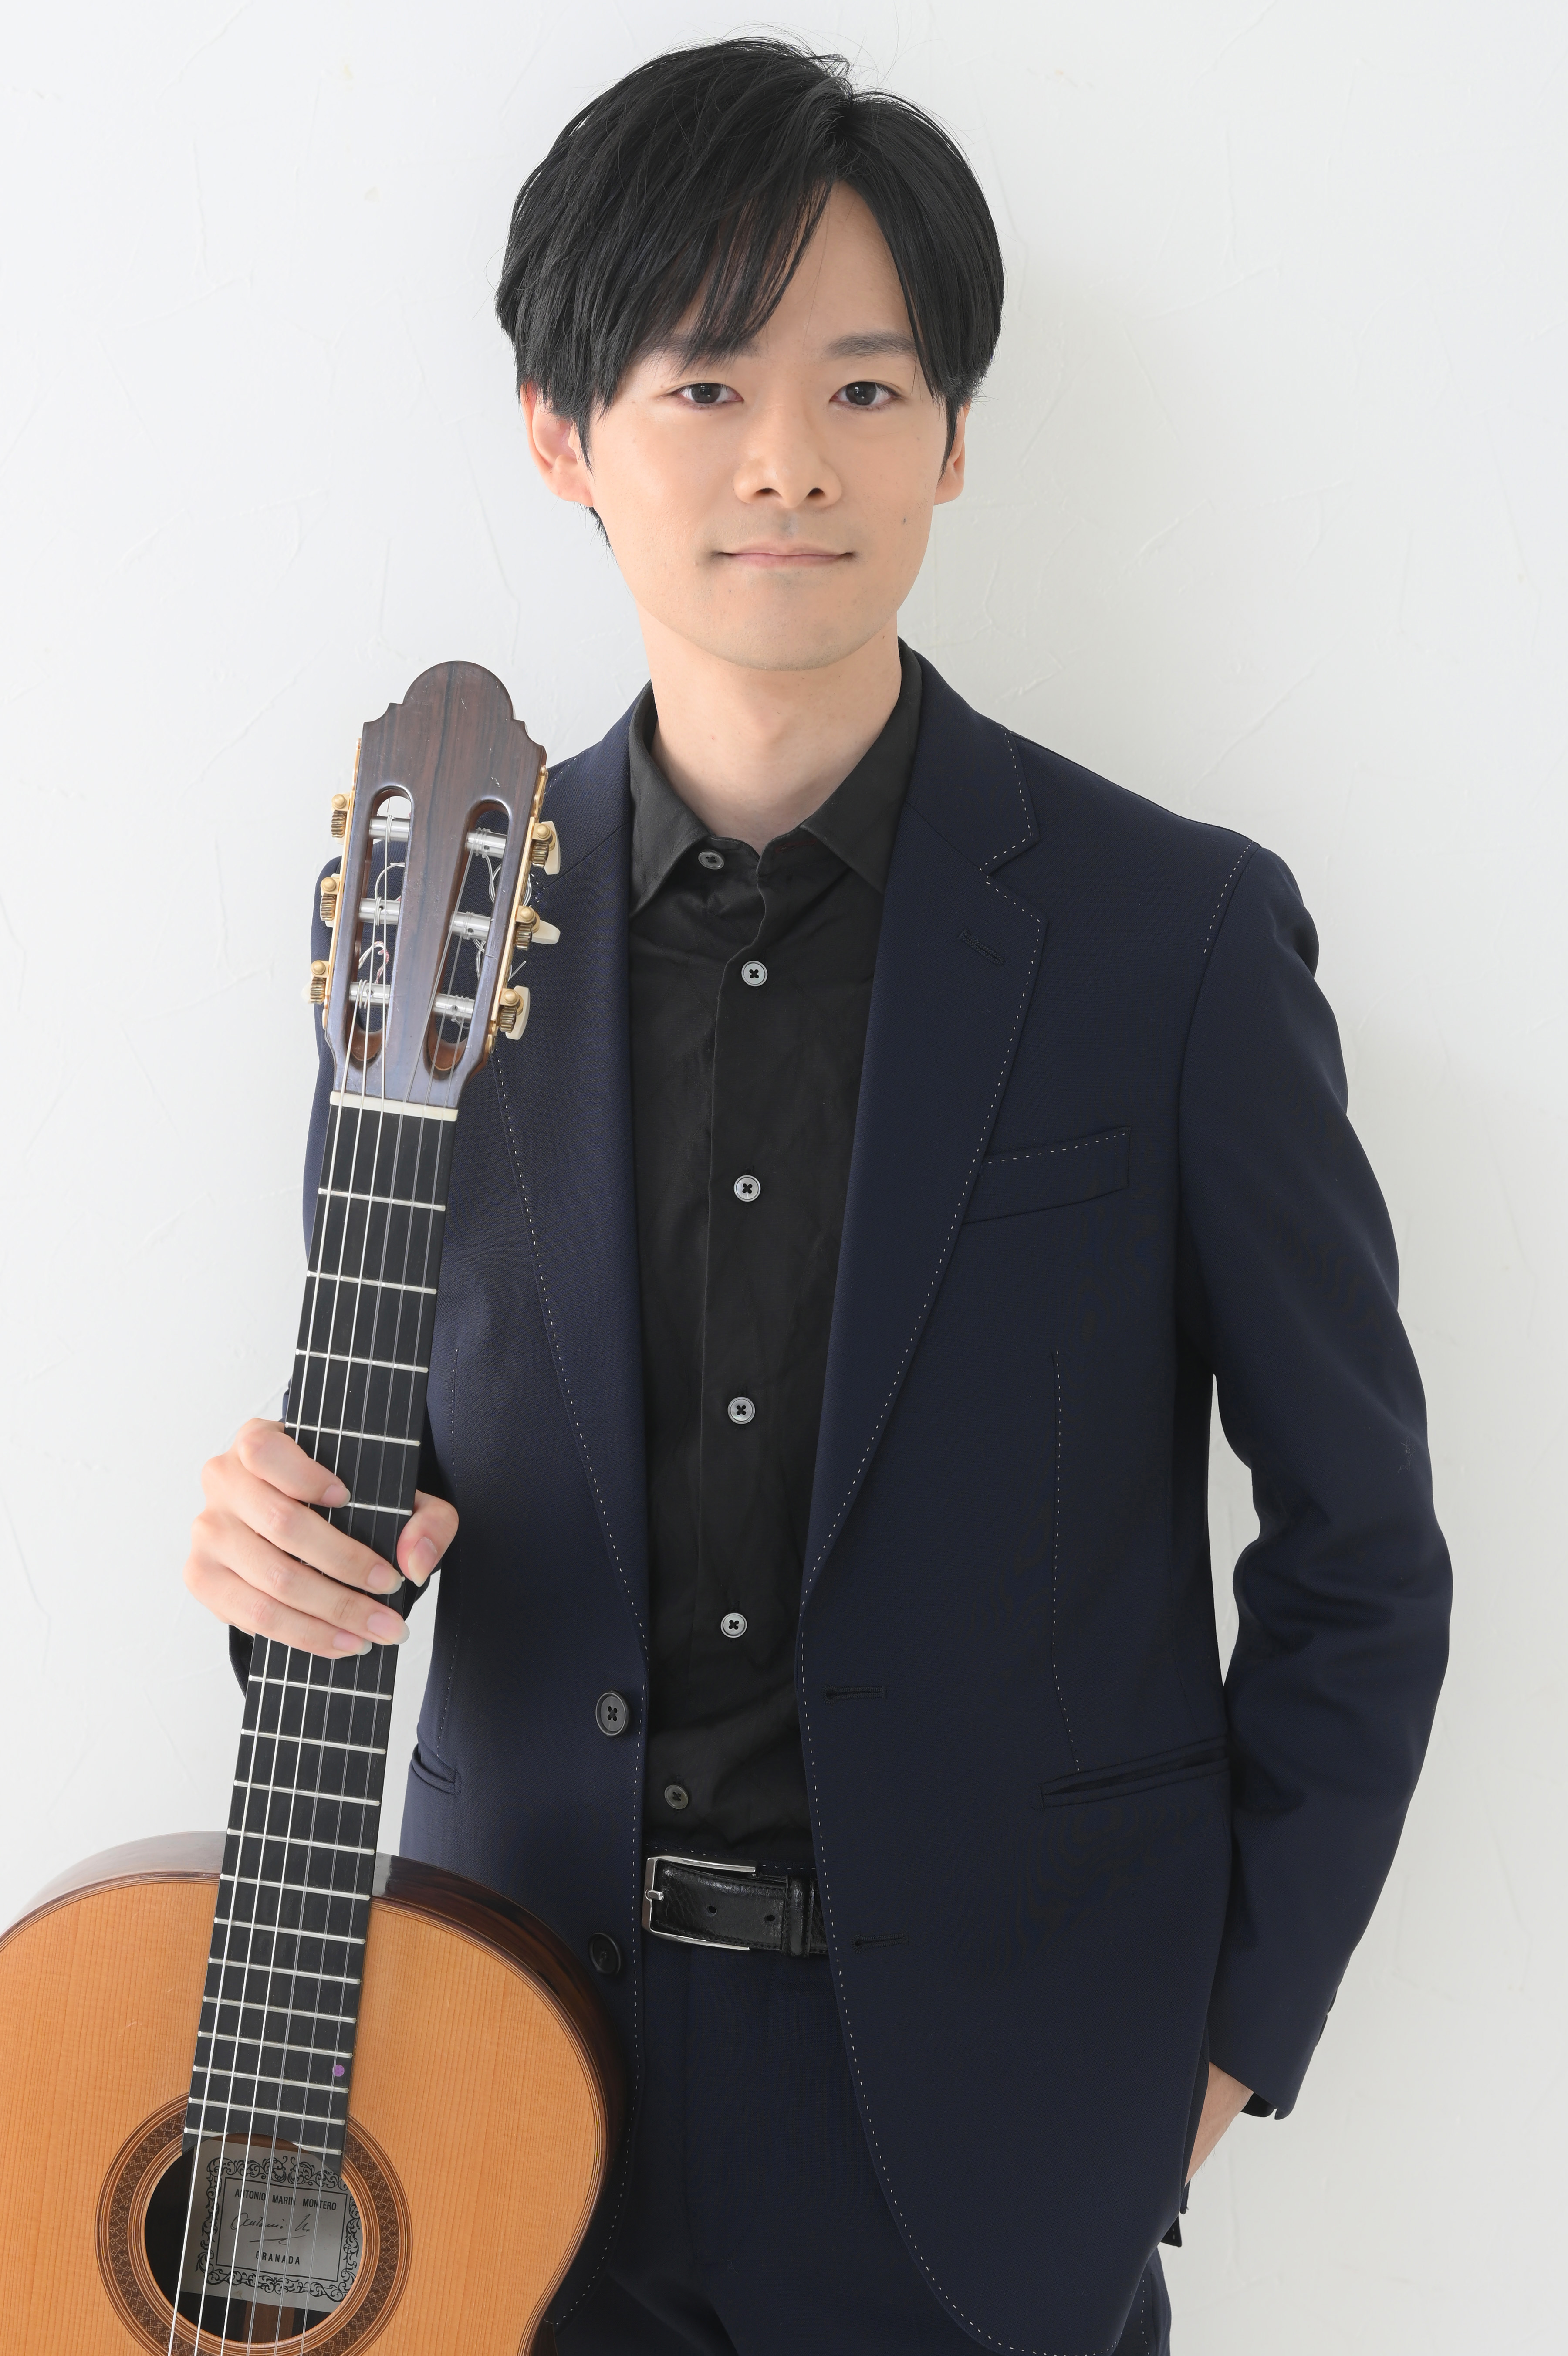 クラシックギター演奏家林 祥太郎(はやし しょうたろう)